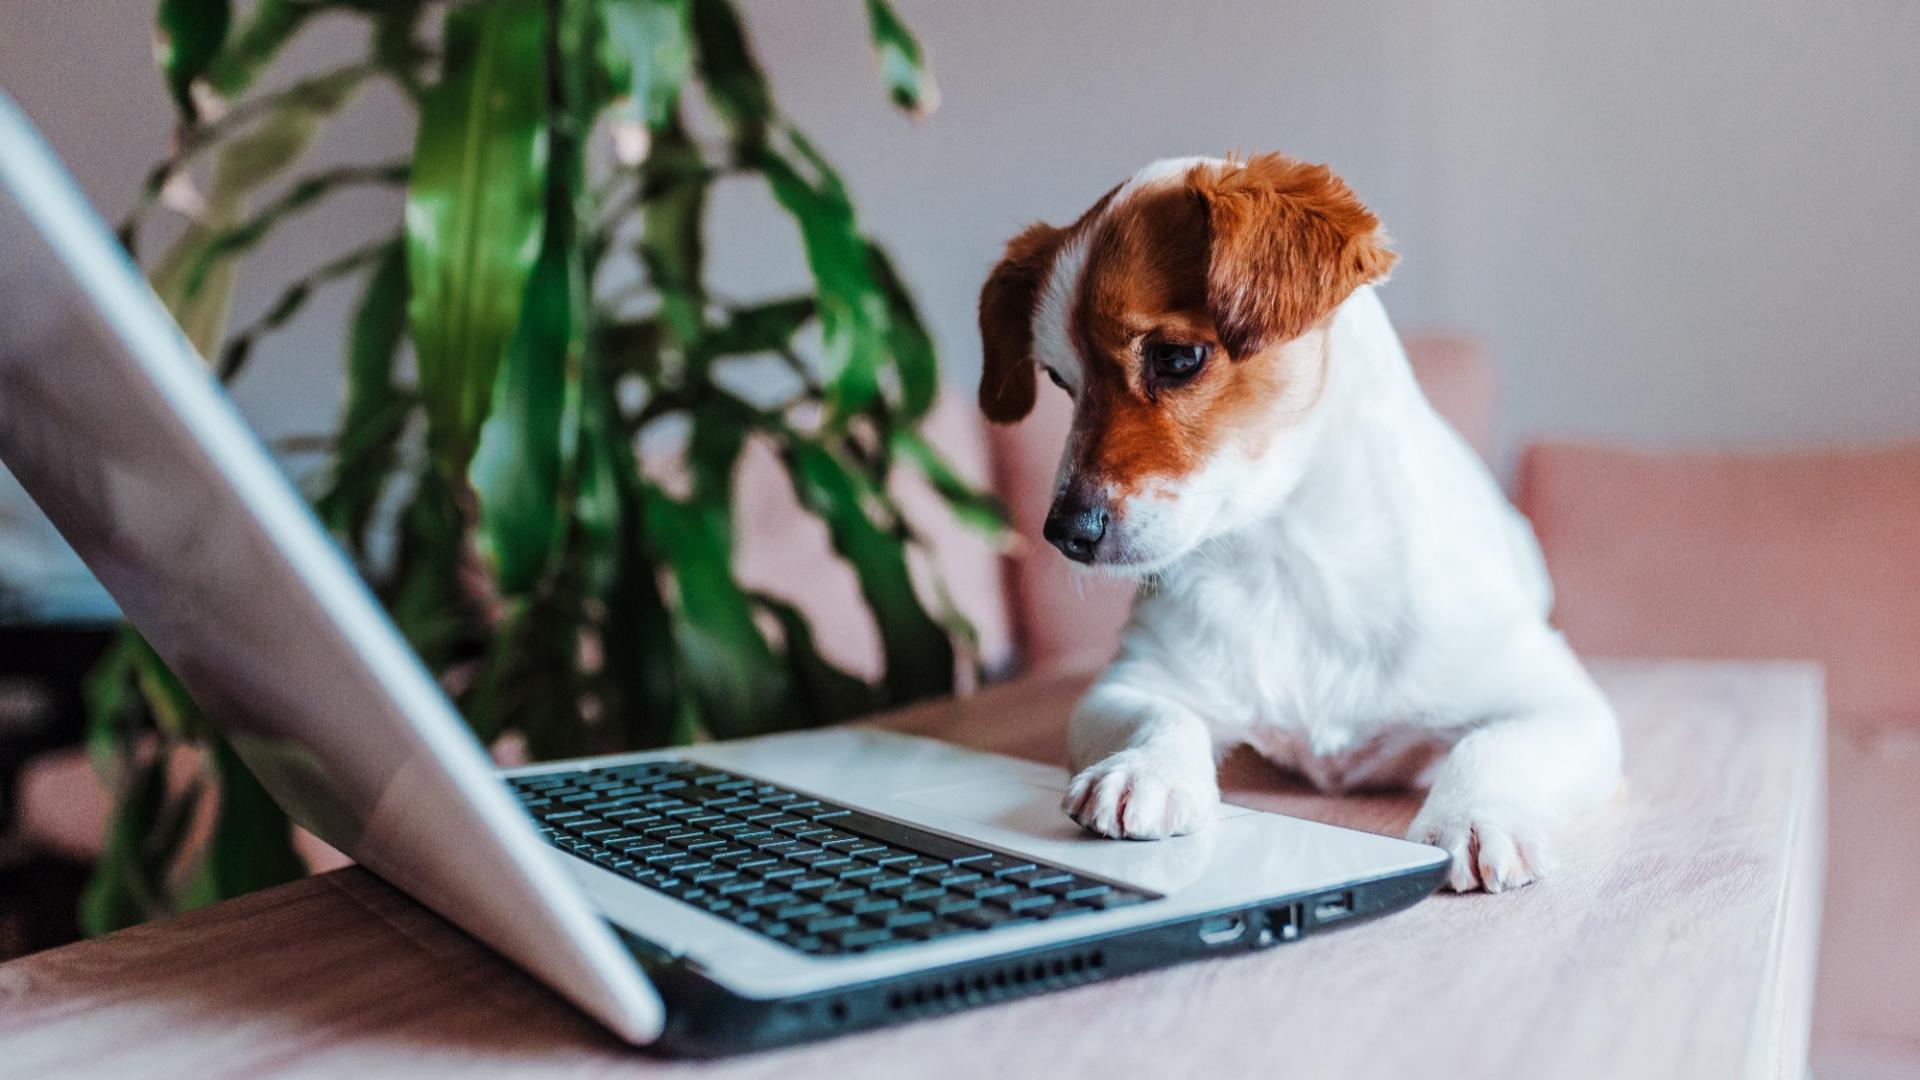 Auf dem Bild ist ein Hund vor einem Laptop abgebildet, der symbolisch für eine telemedizinische Beratung beim Tierarzt steht.